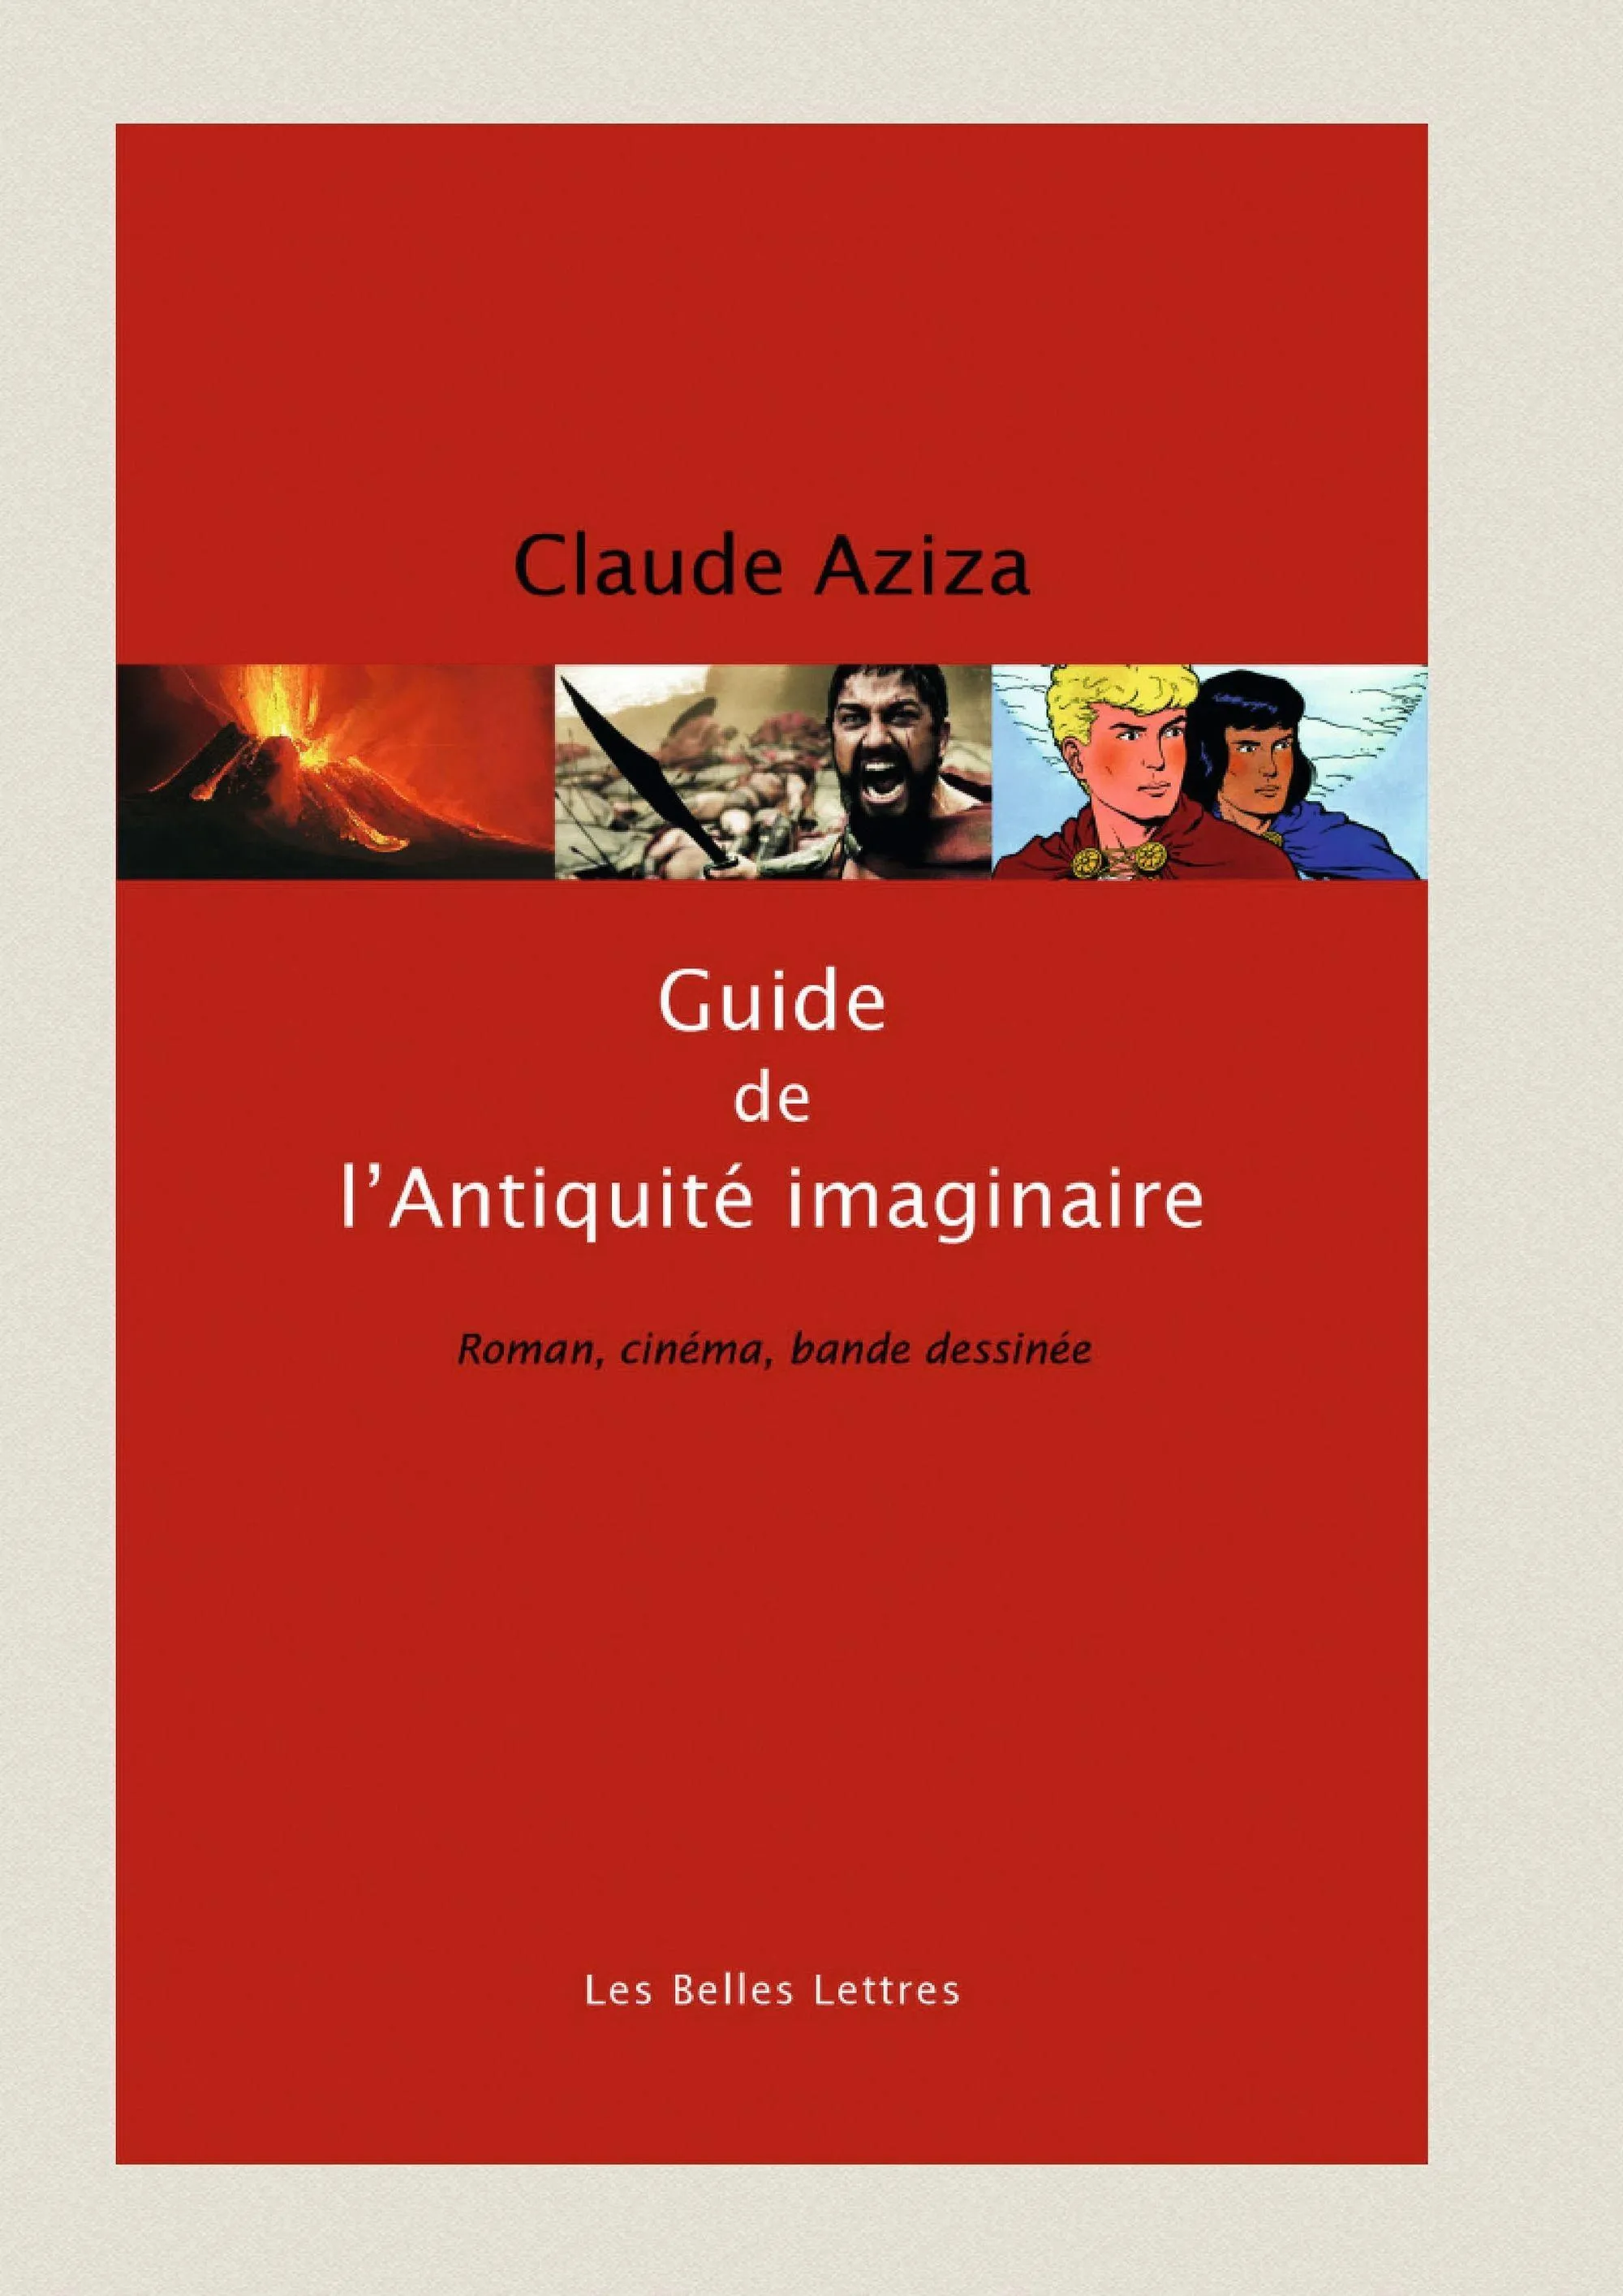 Claude Aziza, Guide de l'Antiquité imaginaire, Belles Lettres, 2016